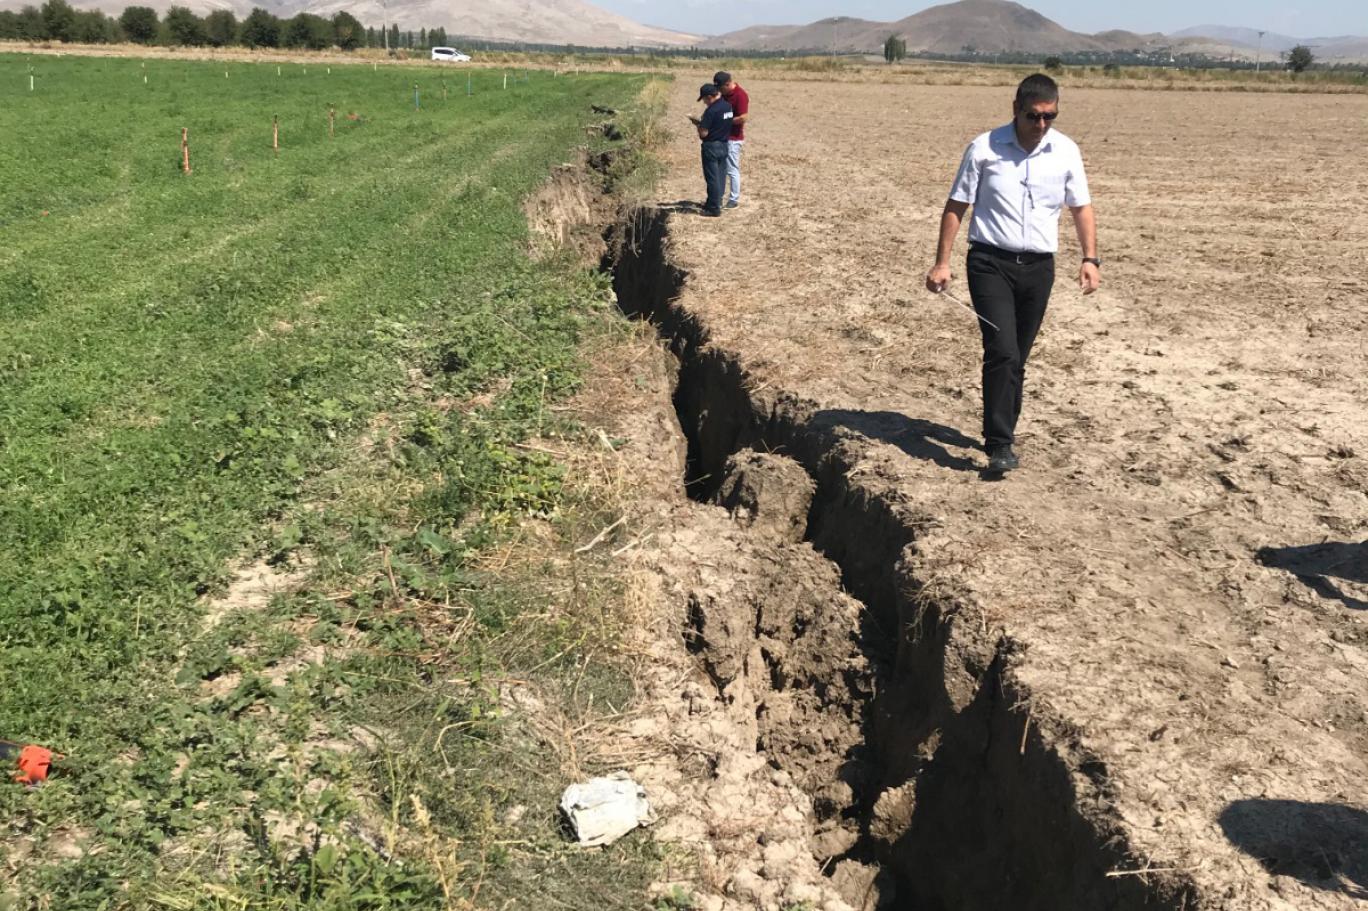 Afyon'da yer yarıldı, 1 kilometrelik yarık oluştu | Independent Türkçe